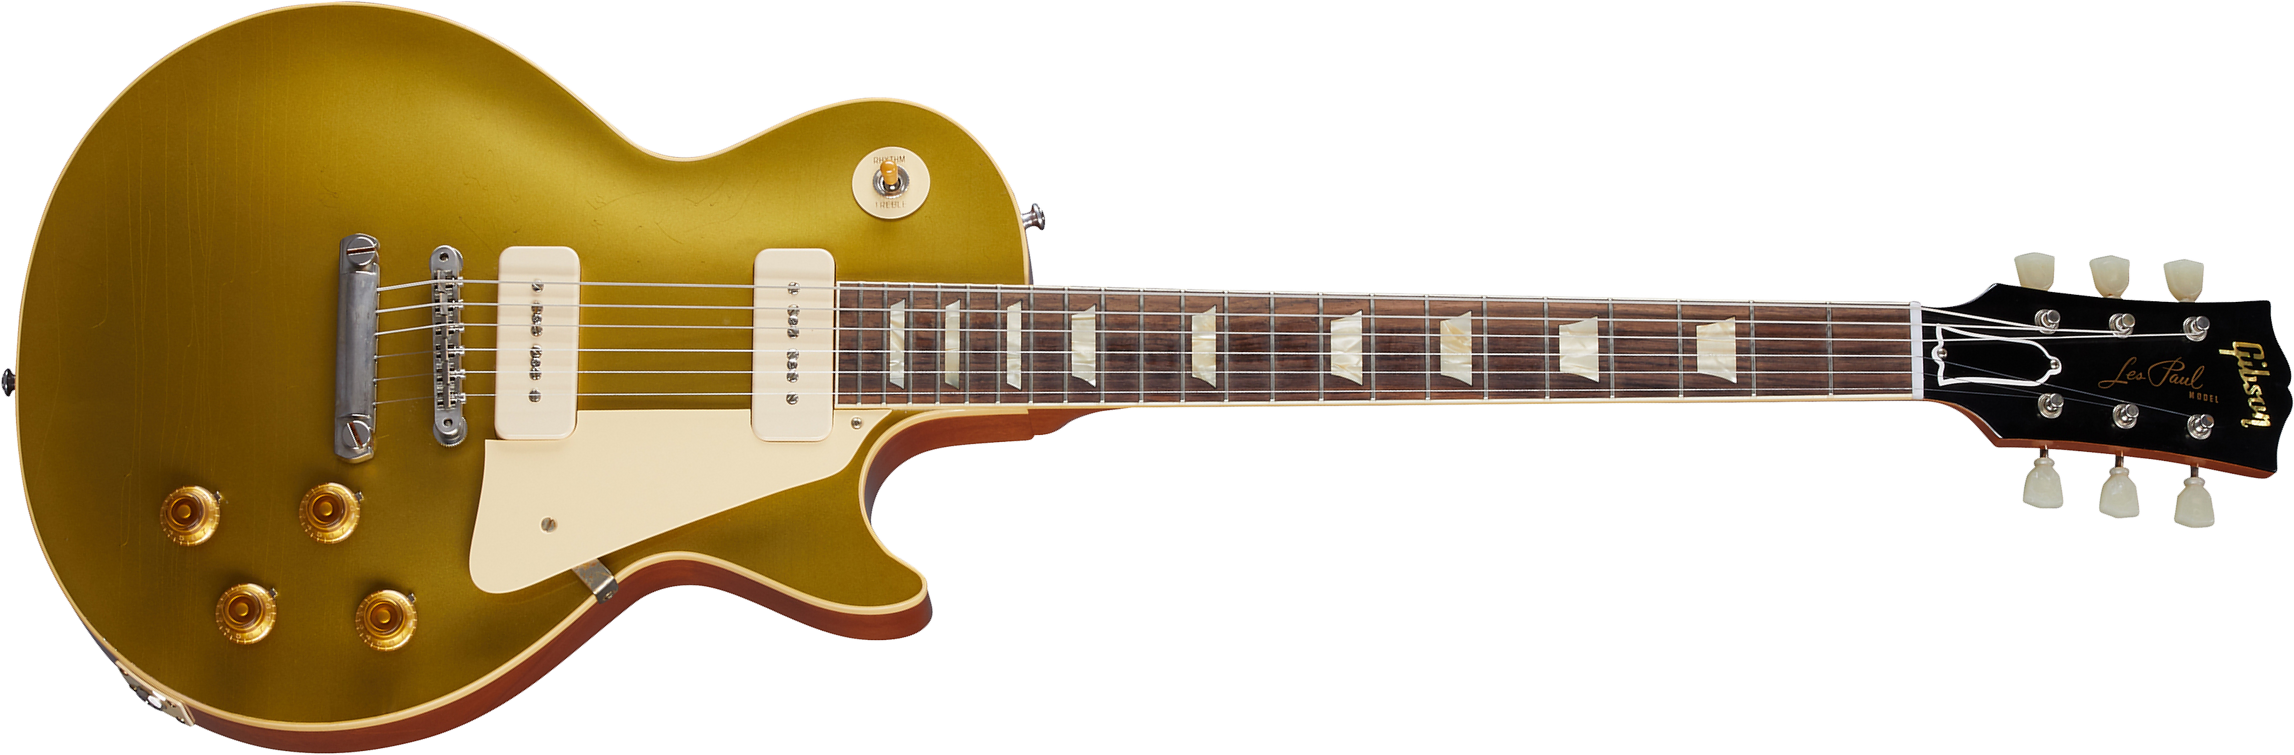 Gibson Custom Shop Murphy Lab Les Paul Goldtop 1956 Reissue 2p90 Ht Rw - Ultra Light Aged Double Gold - Guitarra eléctrica de corte único. - Main pict